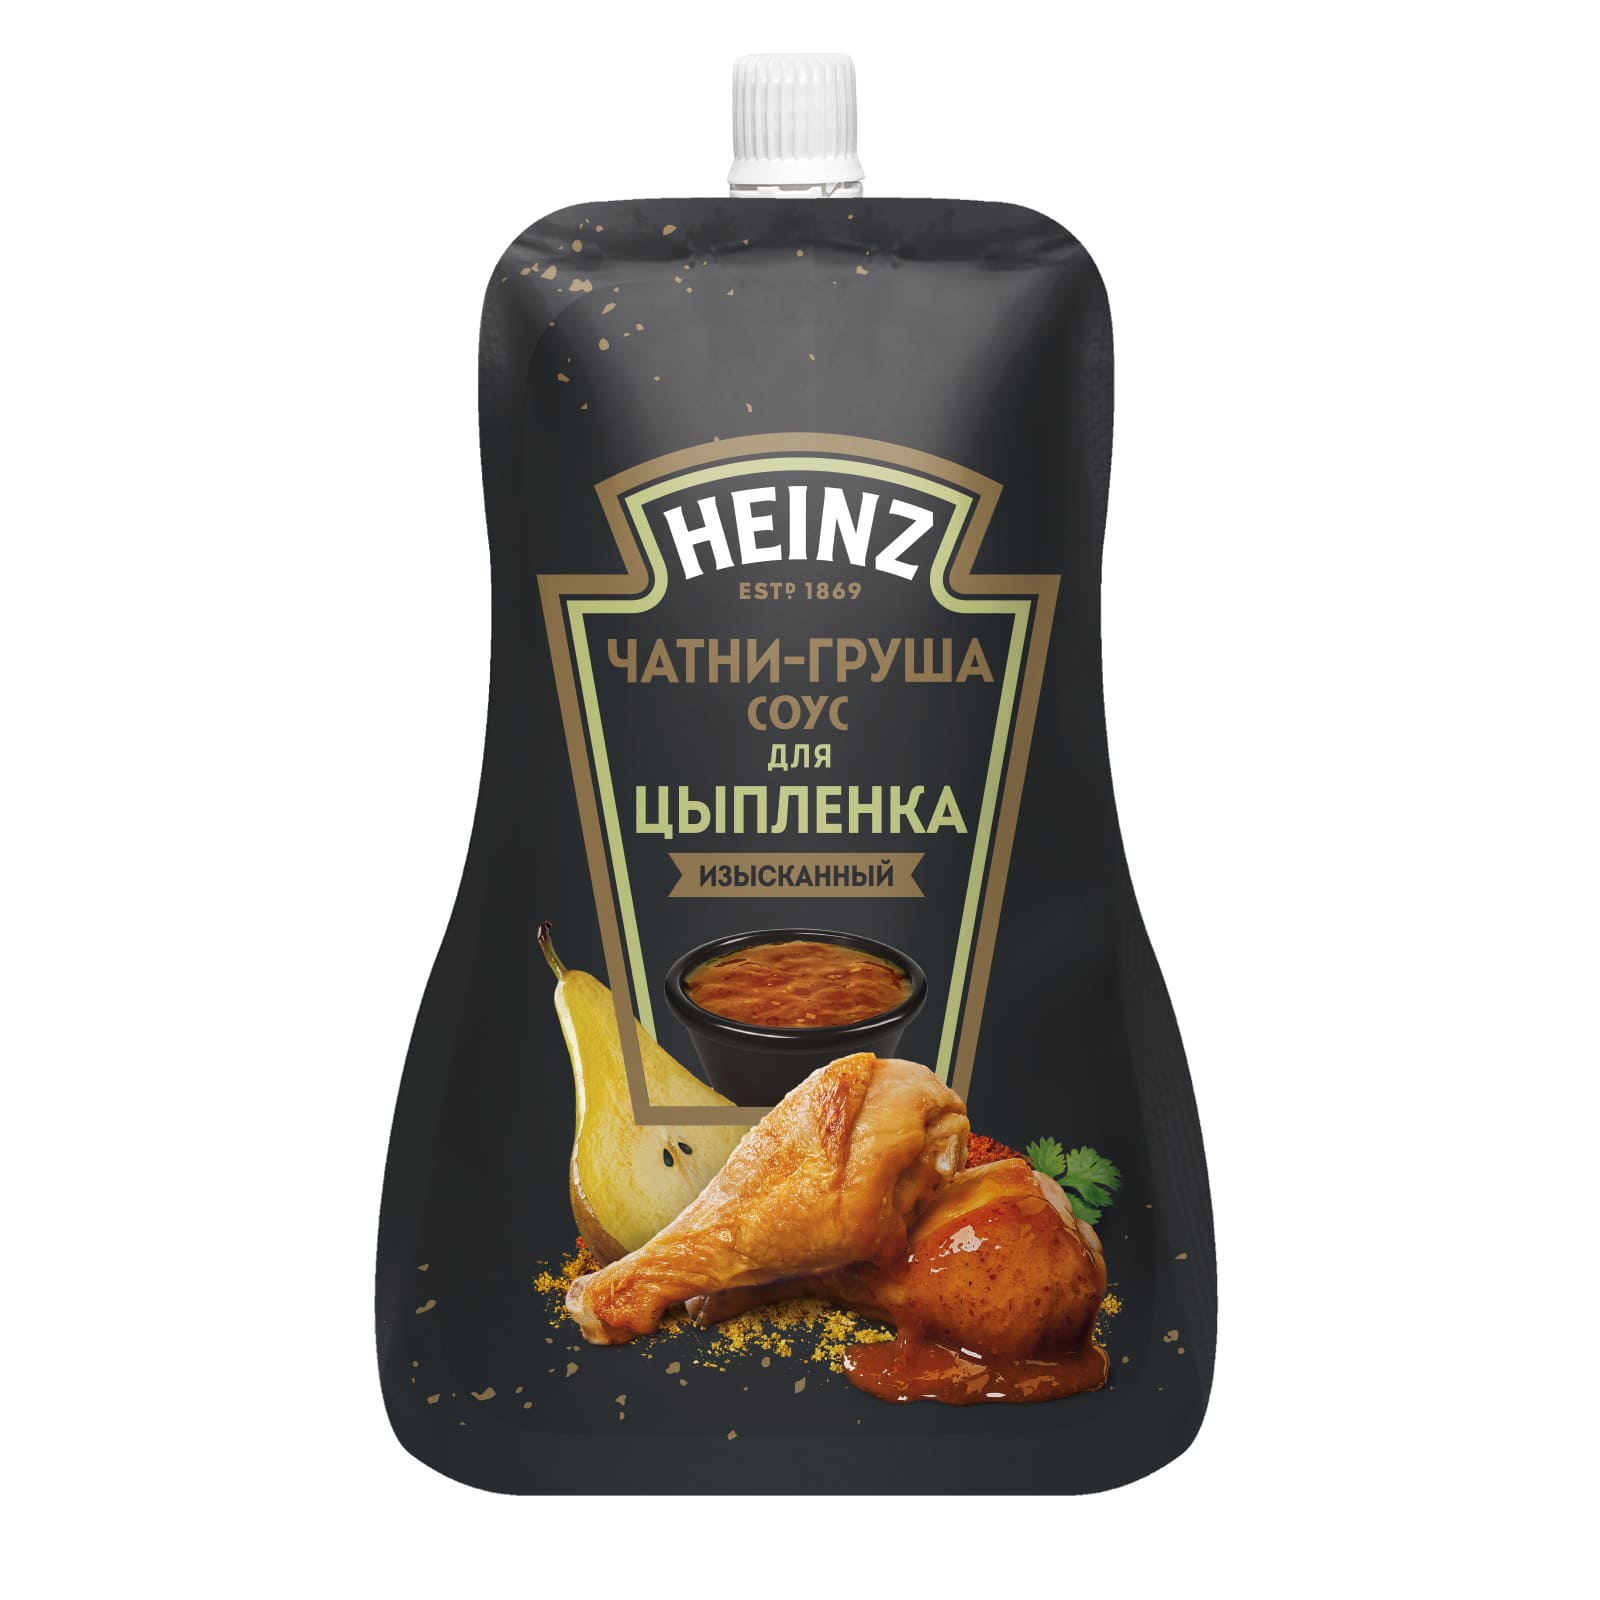 Соус Heinz чатни-груша, для цыплёнка, 200 г - купить в Мегамаркет Спб, цена на Мегамаркет